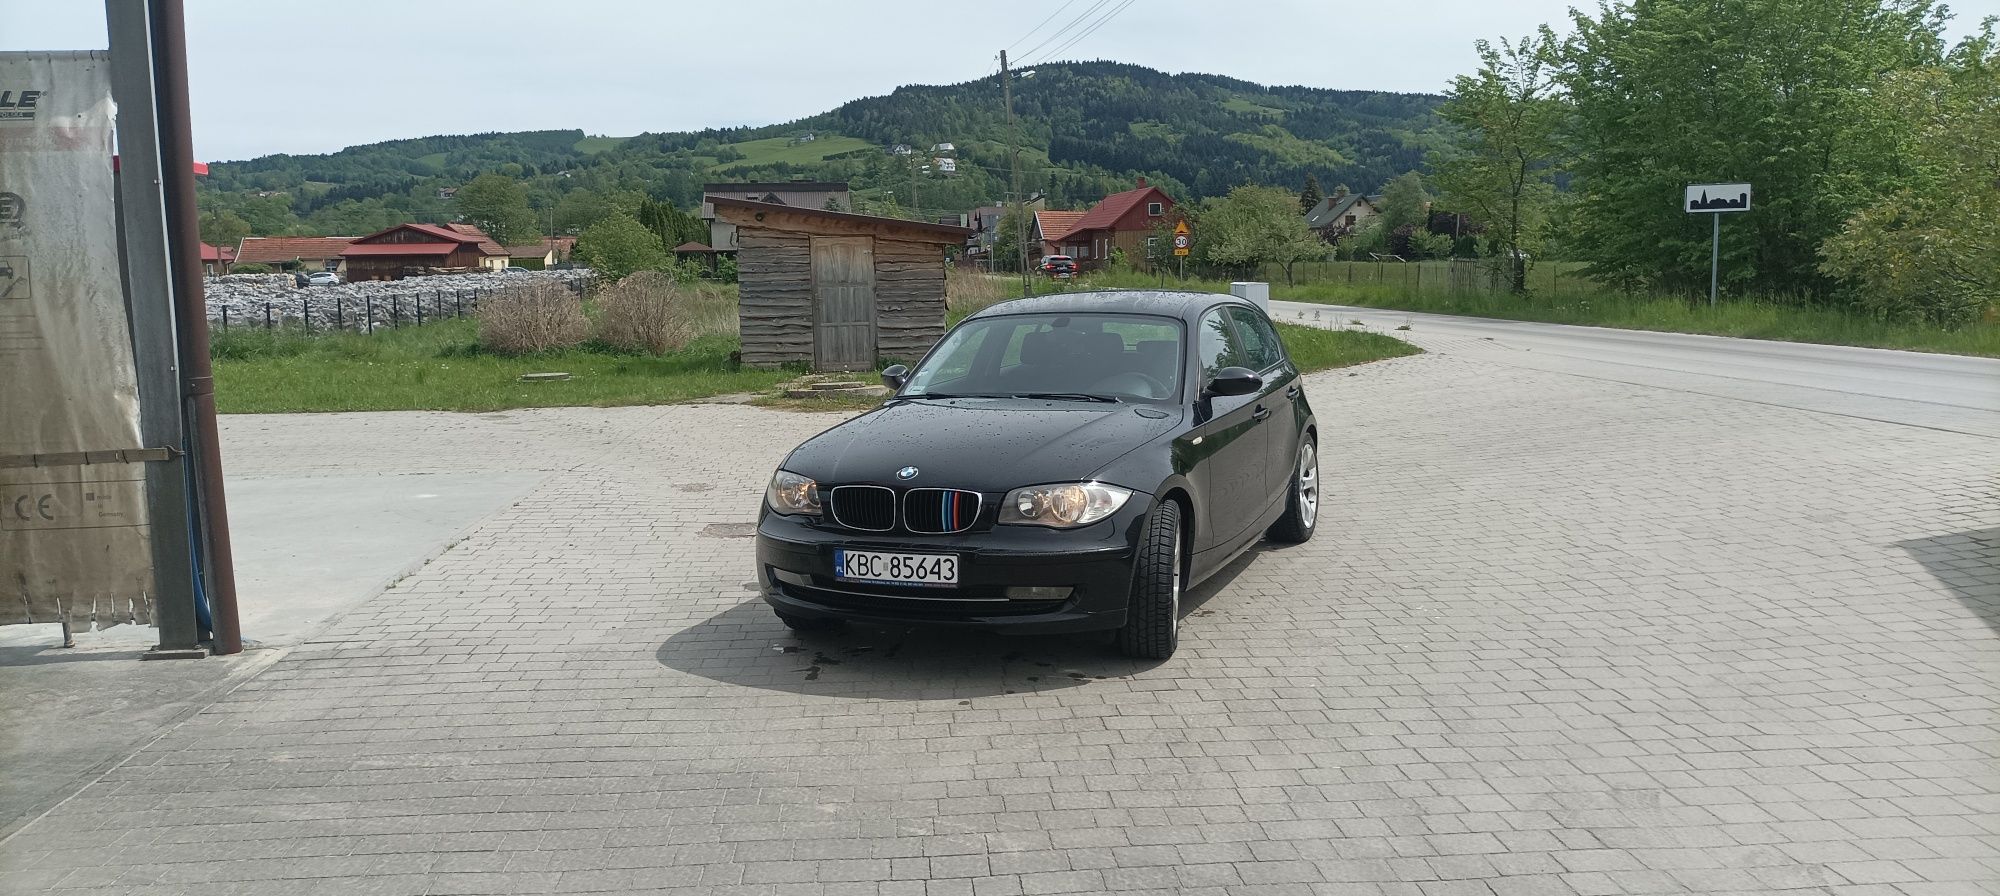 BMW E87 w bardzo dobrym stanie